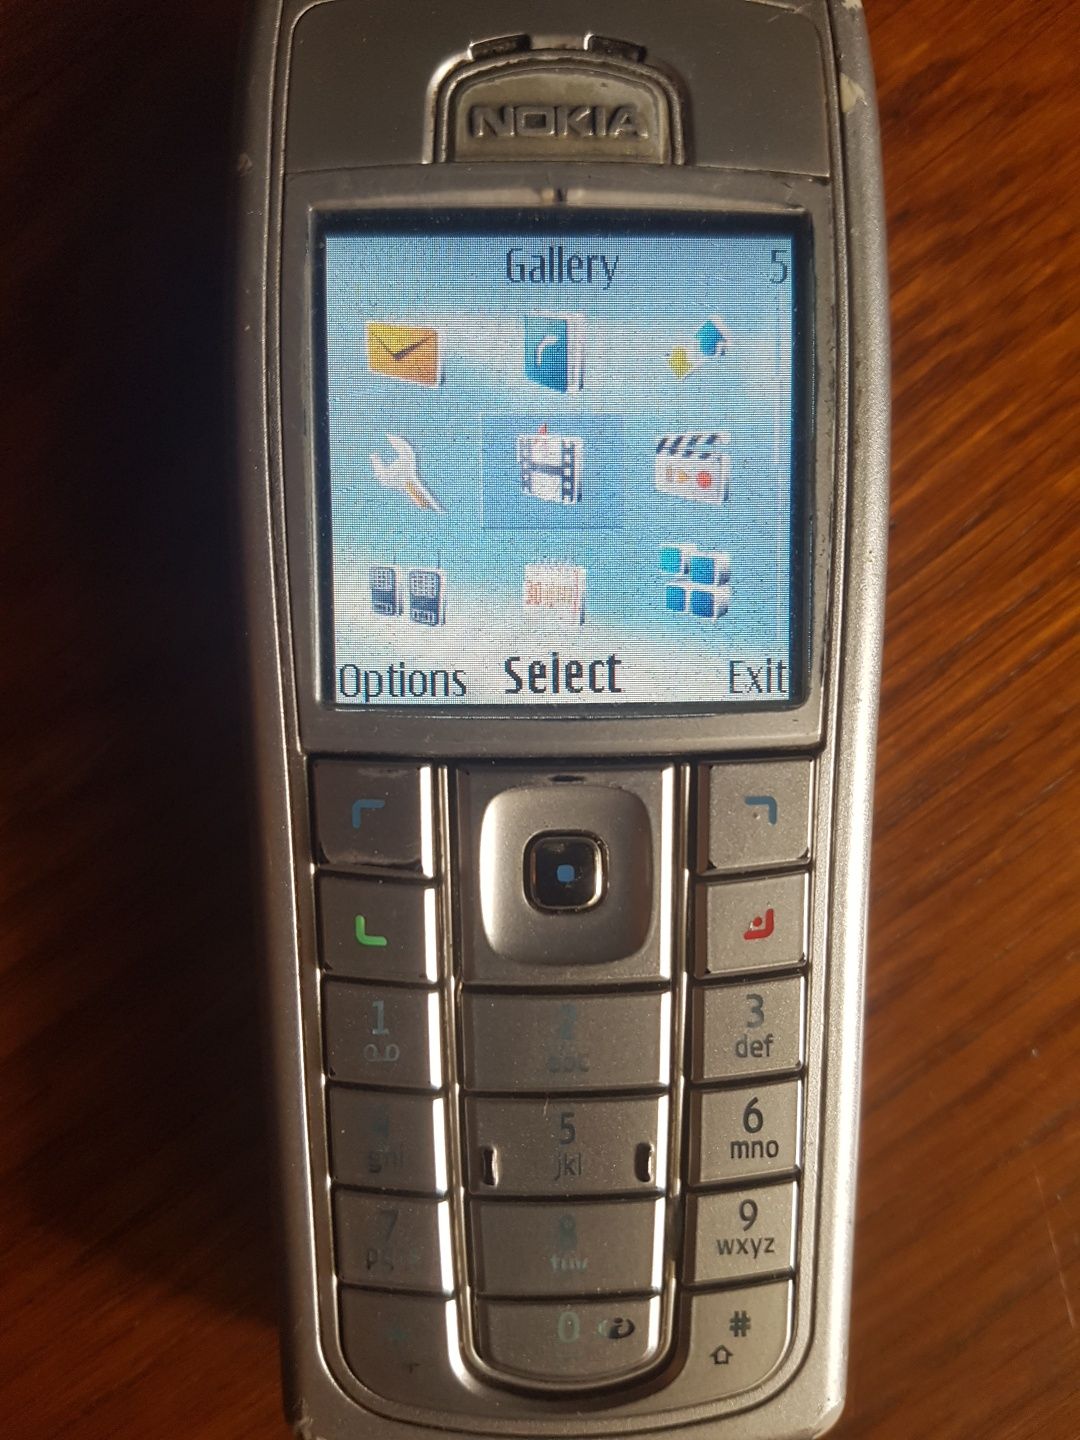 Nokia 6230i, liber retea